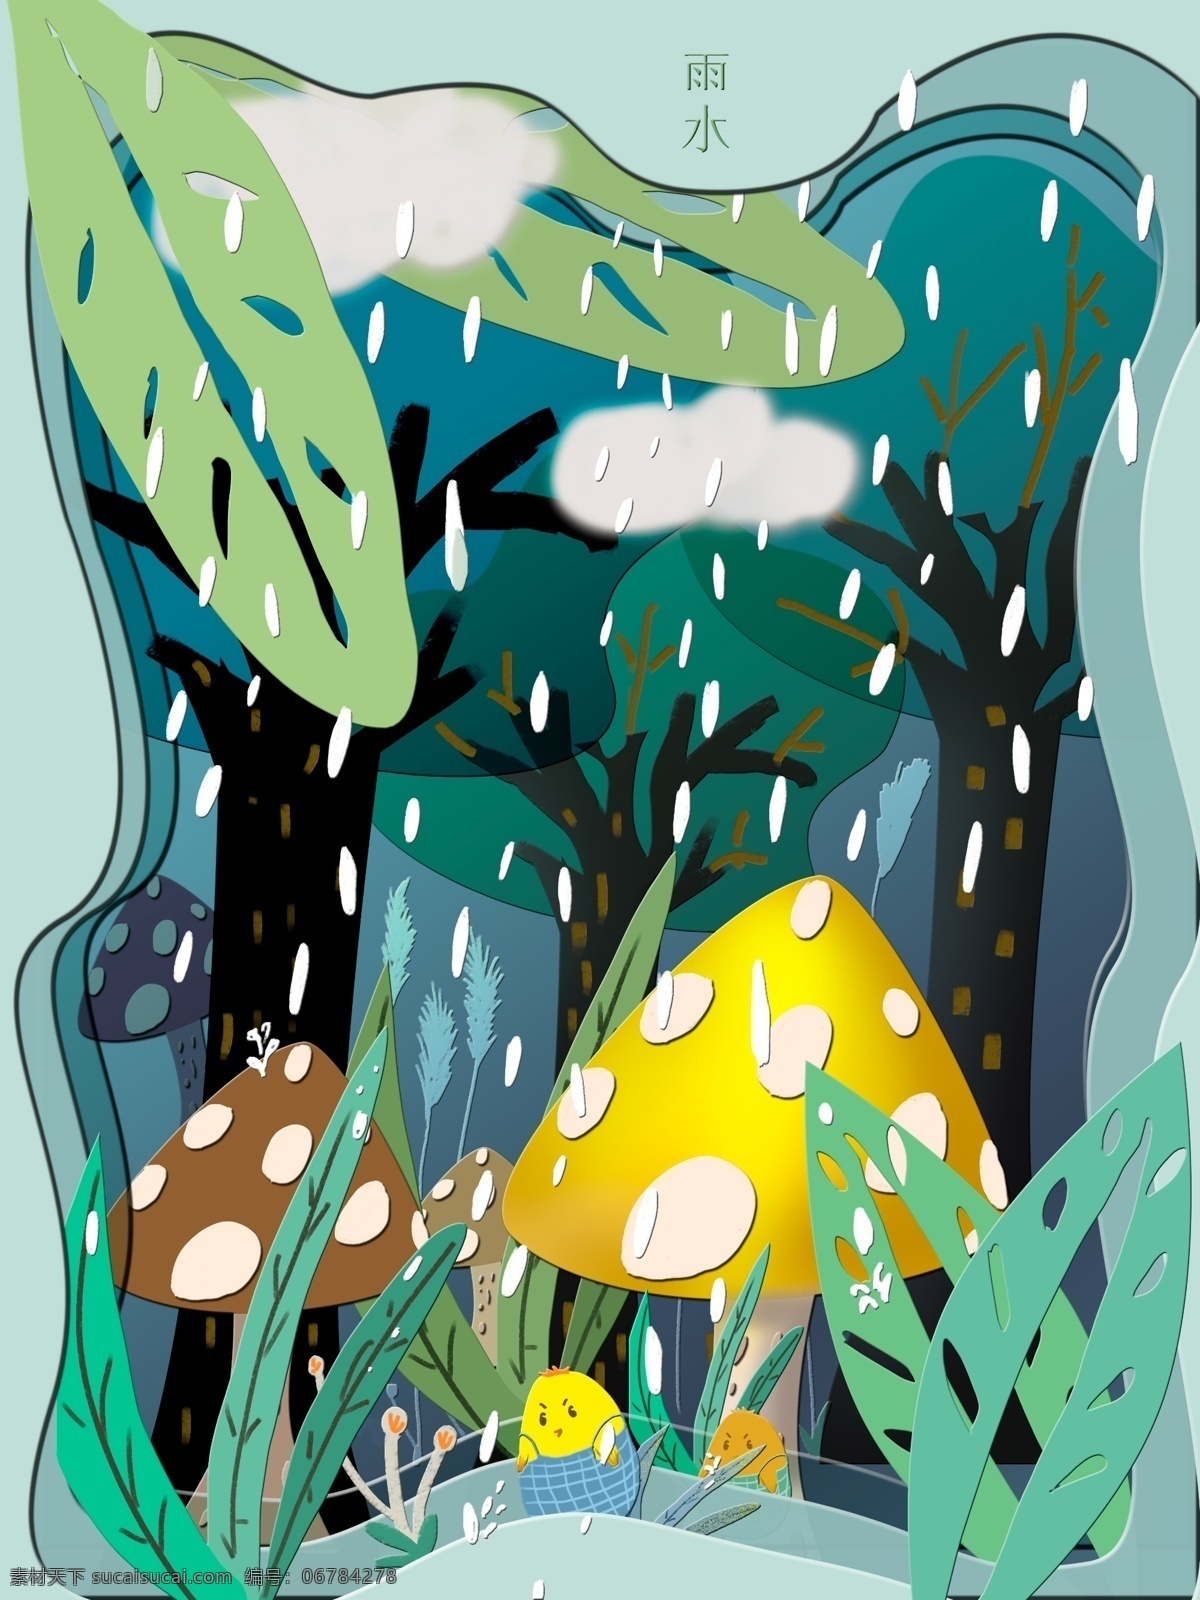 原创 剪纸 风格 雨水 节 森林 蘑菇 树木 绿色 黄色 雨水节 剪纸风 小鸡